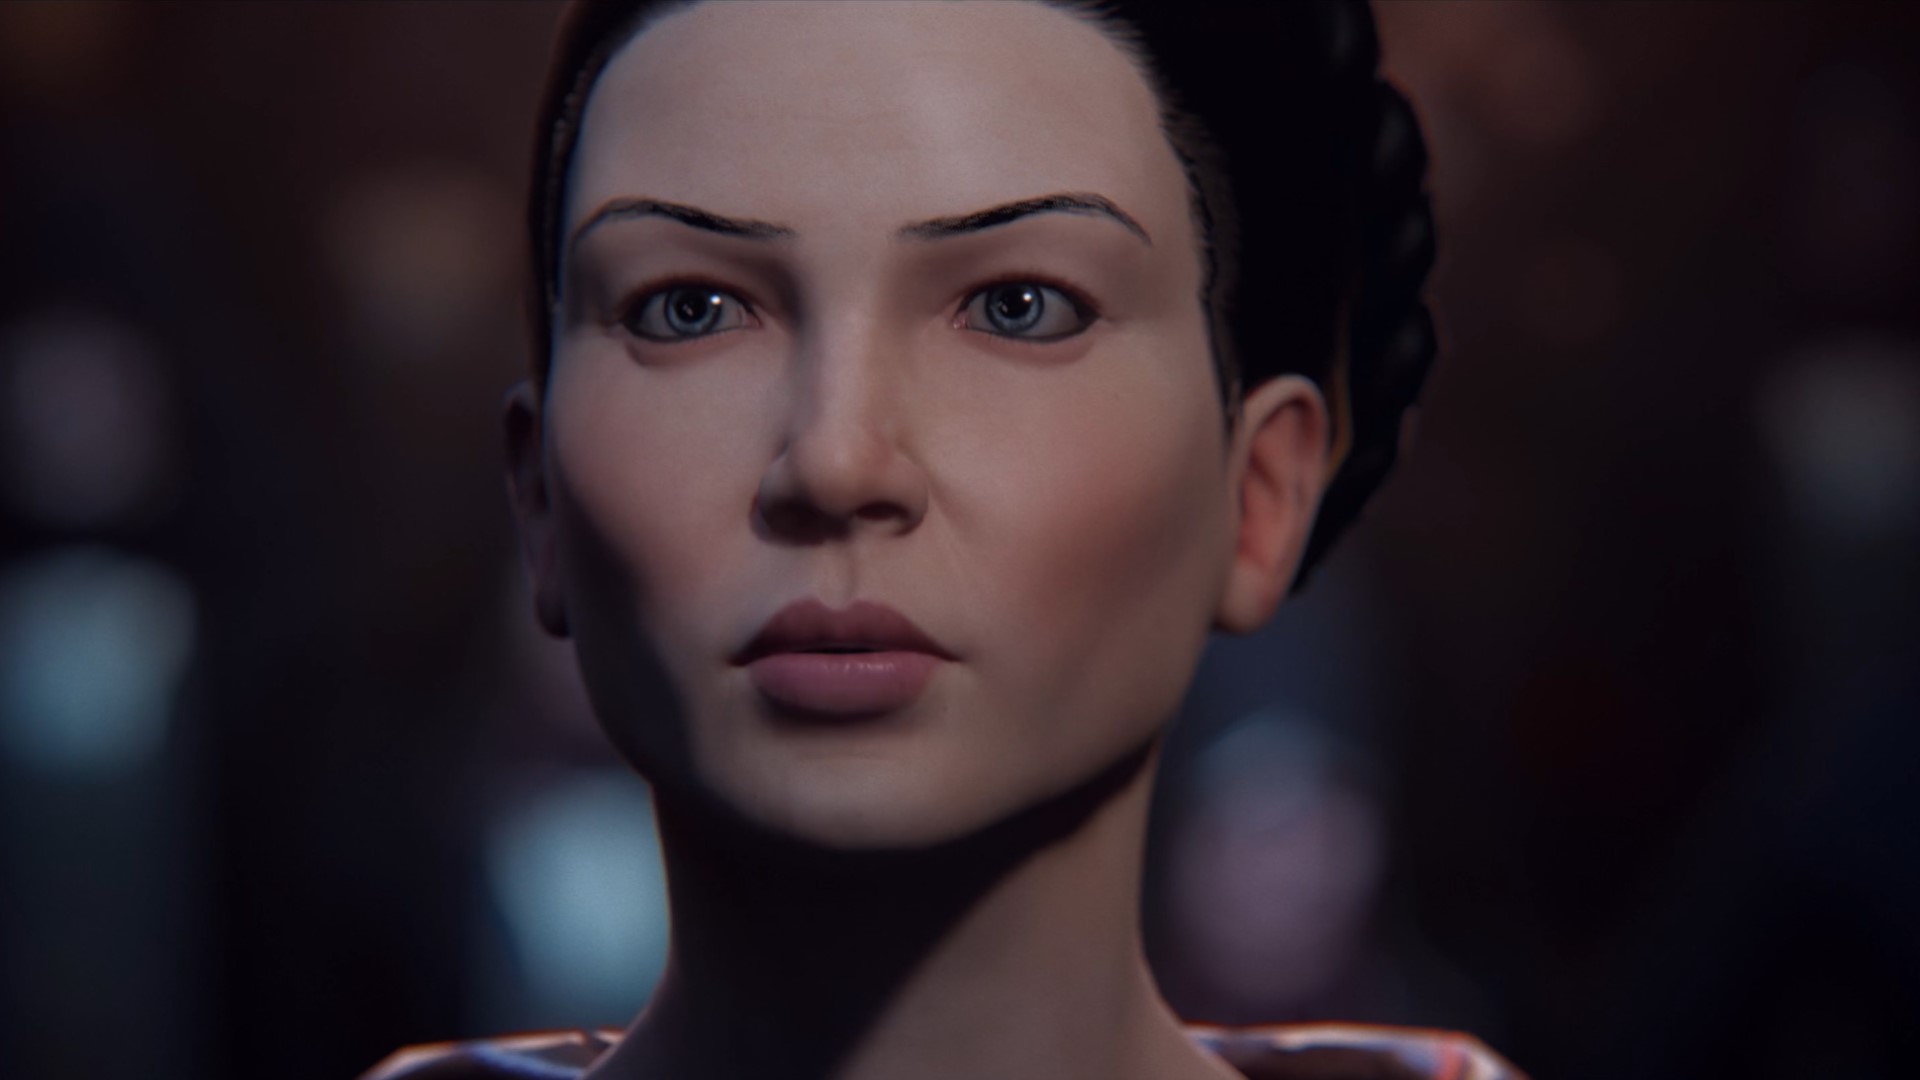 Eve Online Uprising Erweiterung: Eine Nahaufnahme des Gesichts einer Frau, sie sieht grimmig entschlossen aus und vielleicht etwas besorgt darüber, was kommen wird